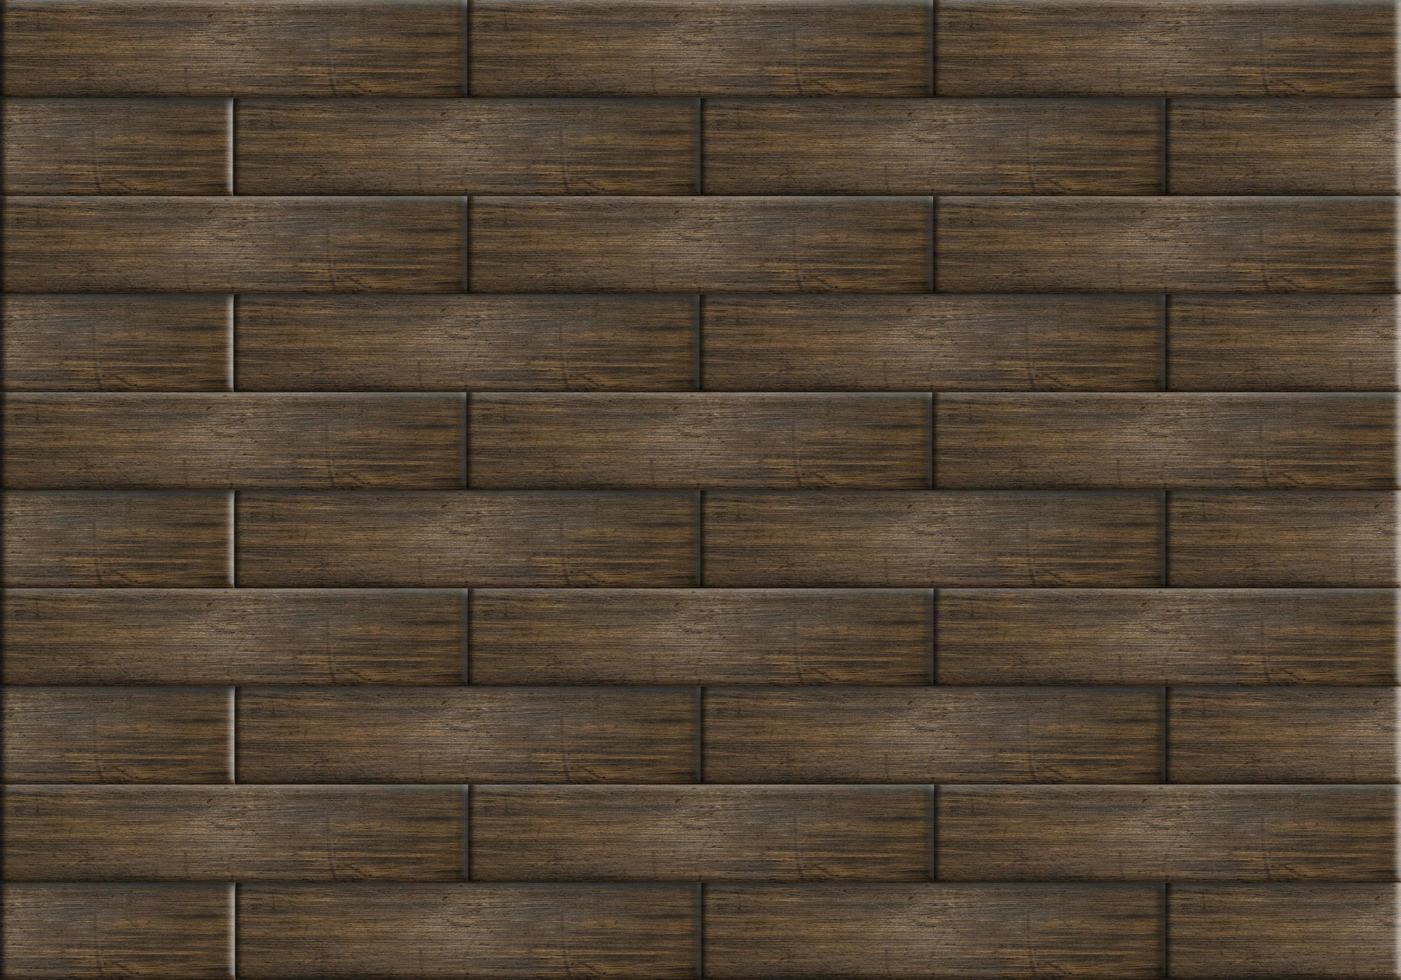 Wooden floor pattern background photo